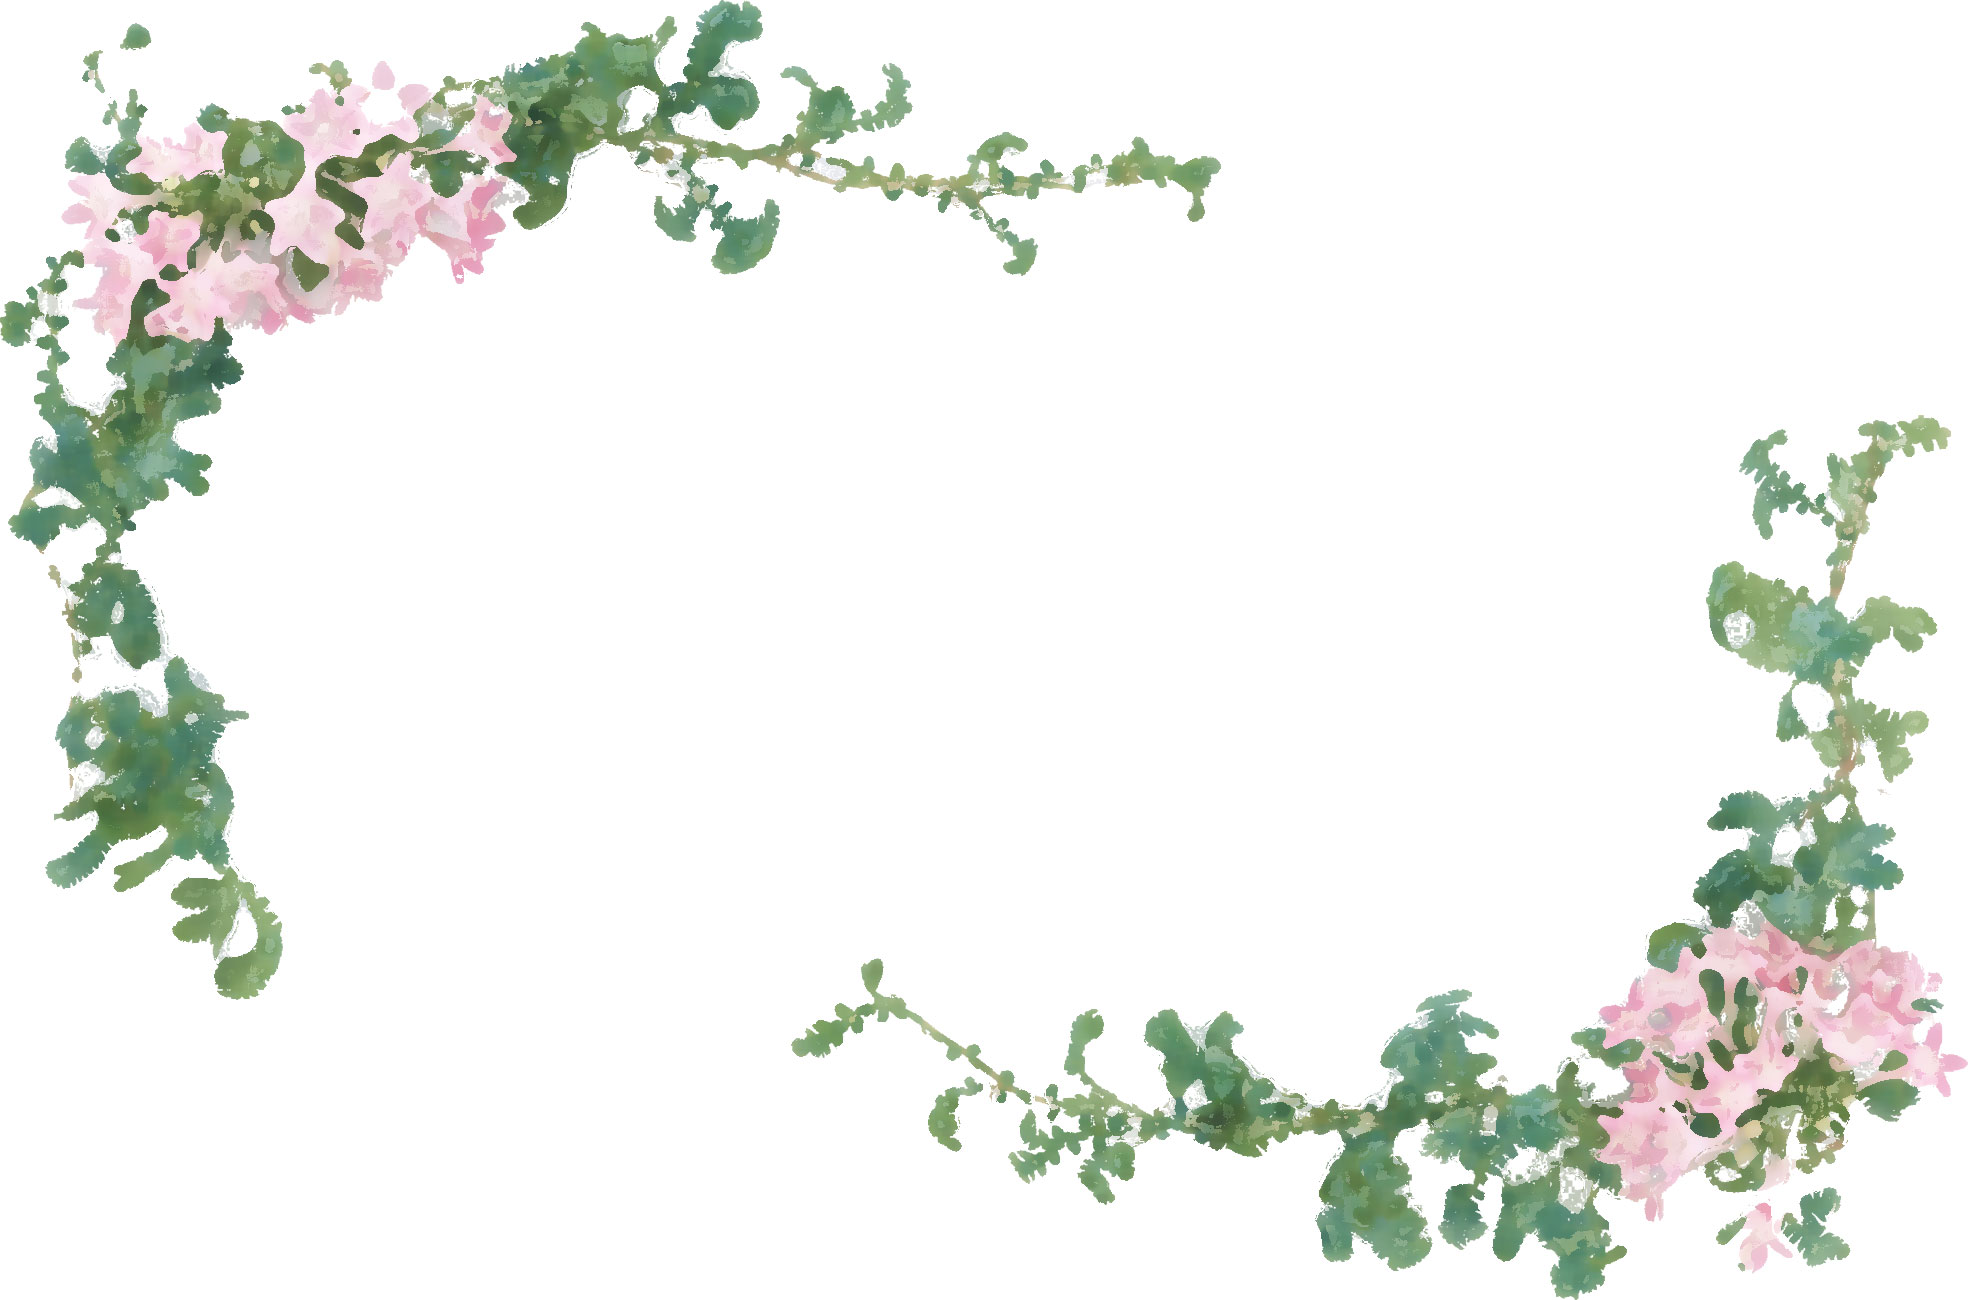 ピンクの花のイラスト フリー素材 No 311 ピンク 緑 葉